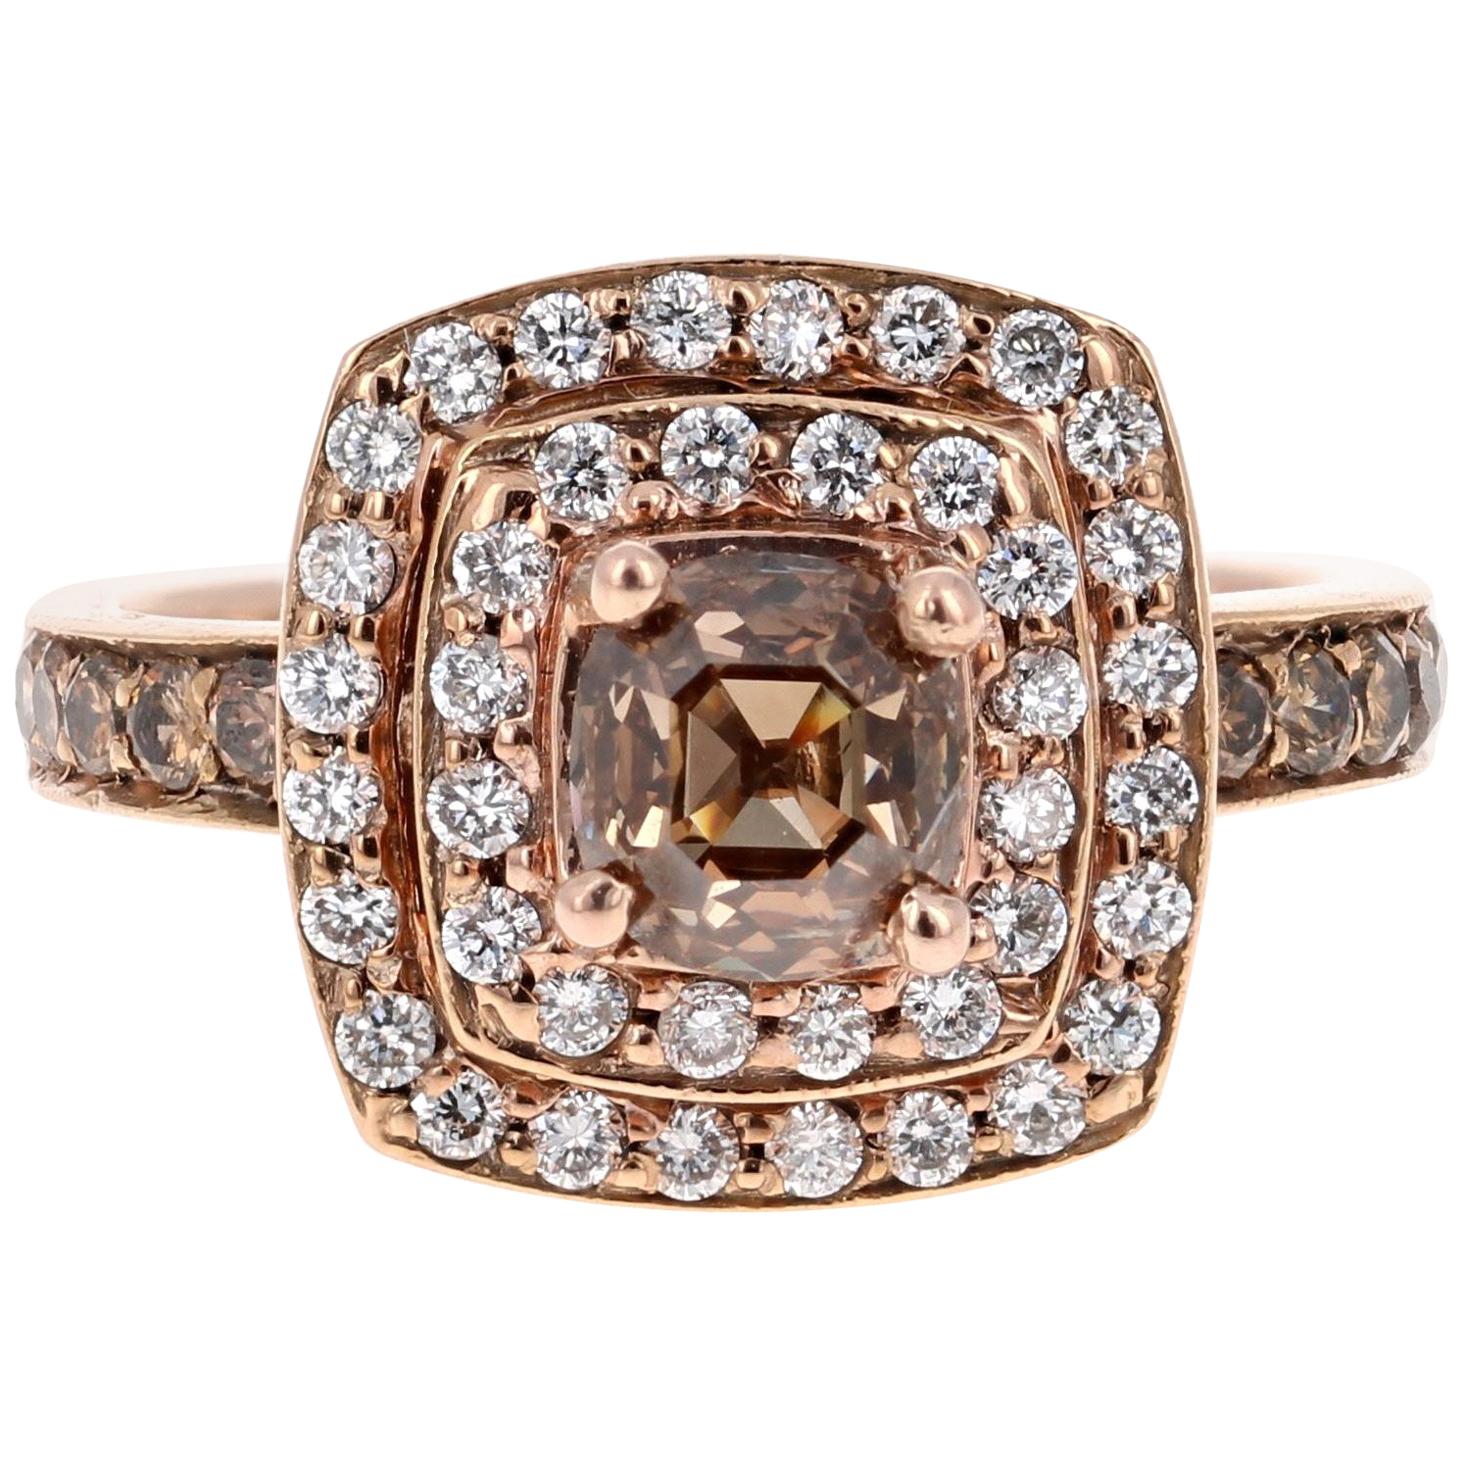 2.10 Carat Natural Fancy Brown Diamond Engagement Ring 14 Karat Rose Gold